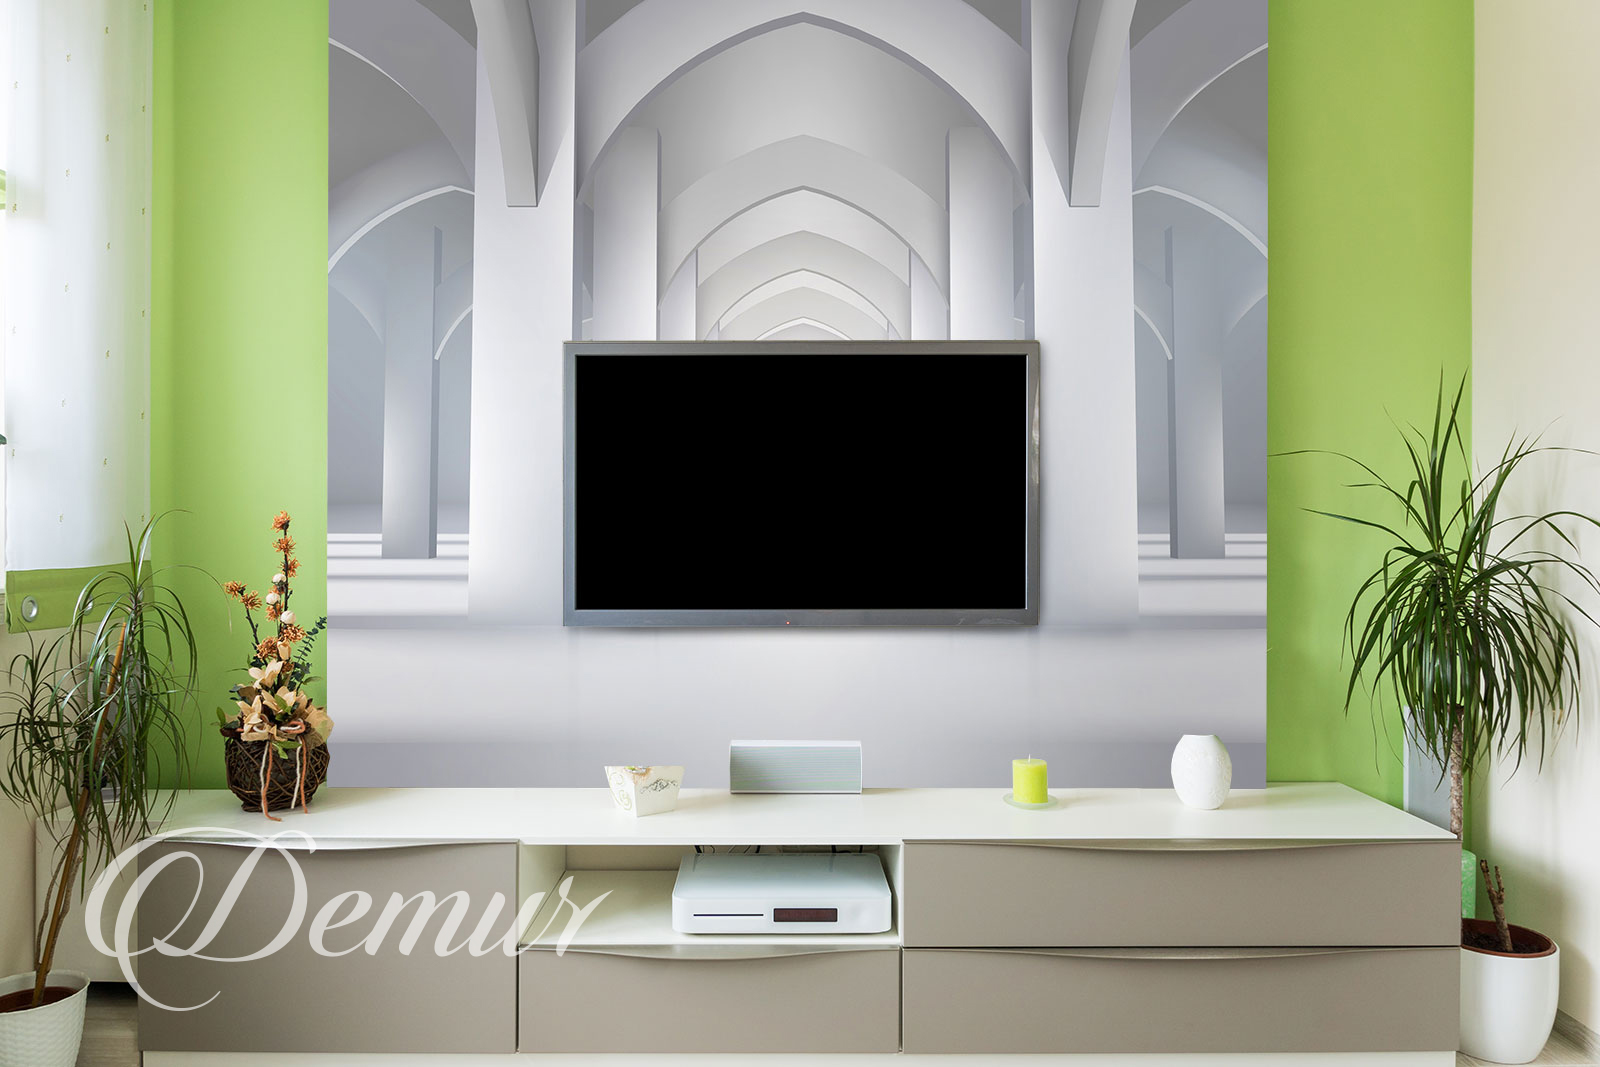 Fototapeta biały pałac - Pomysł na ścianę z telewizorem - Demur